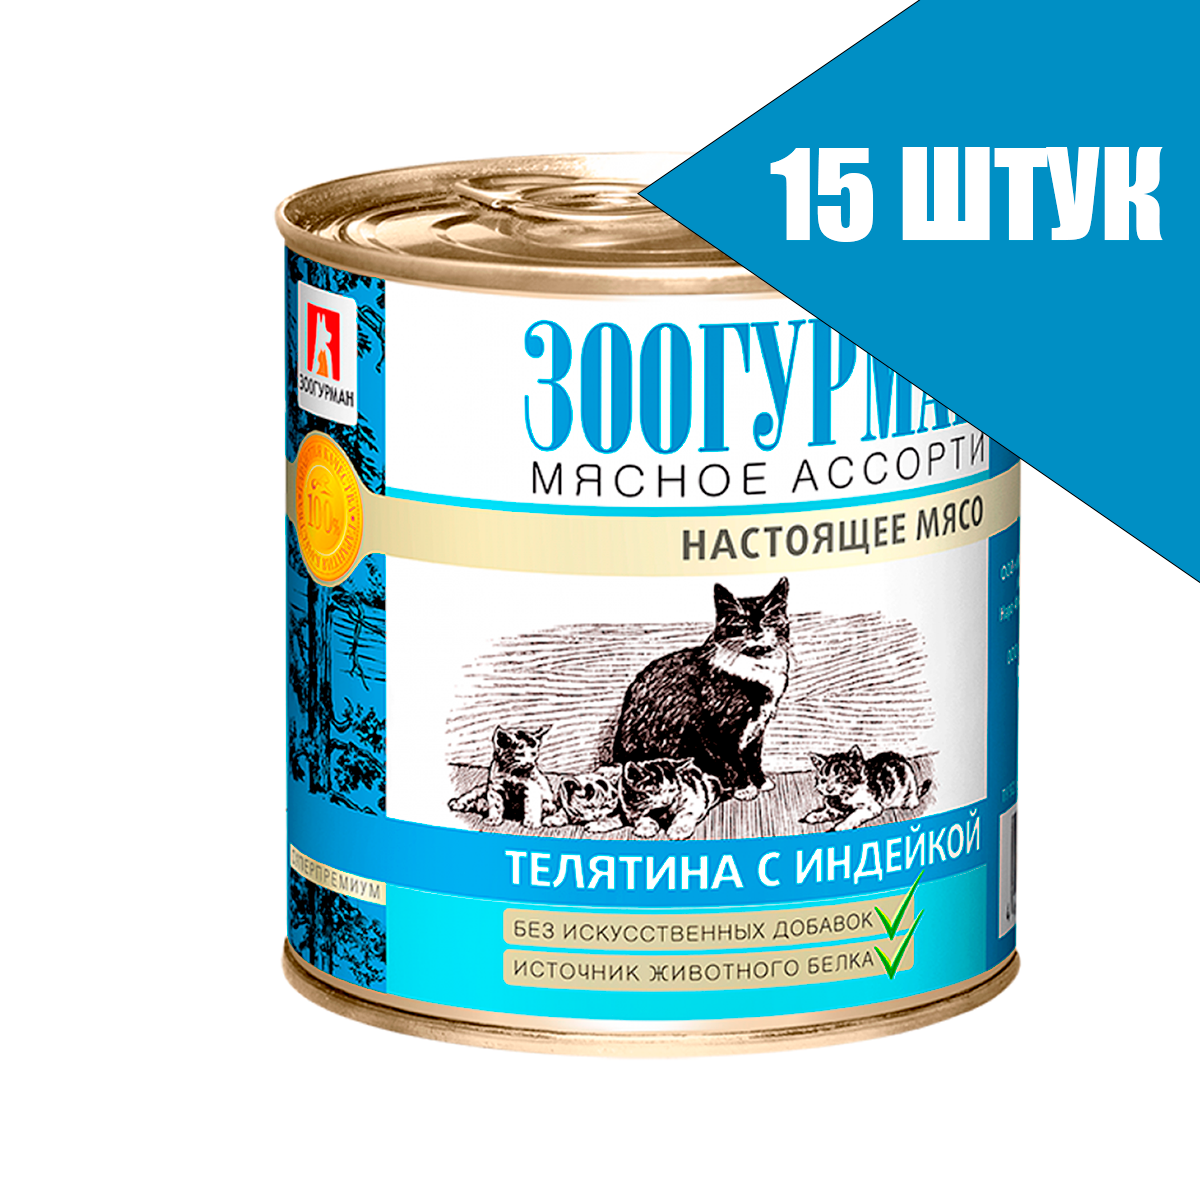 Зоогурман для кошек Мясное ассорти Телятина с индейкой, консервы 250г (15 банок)